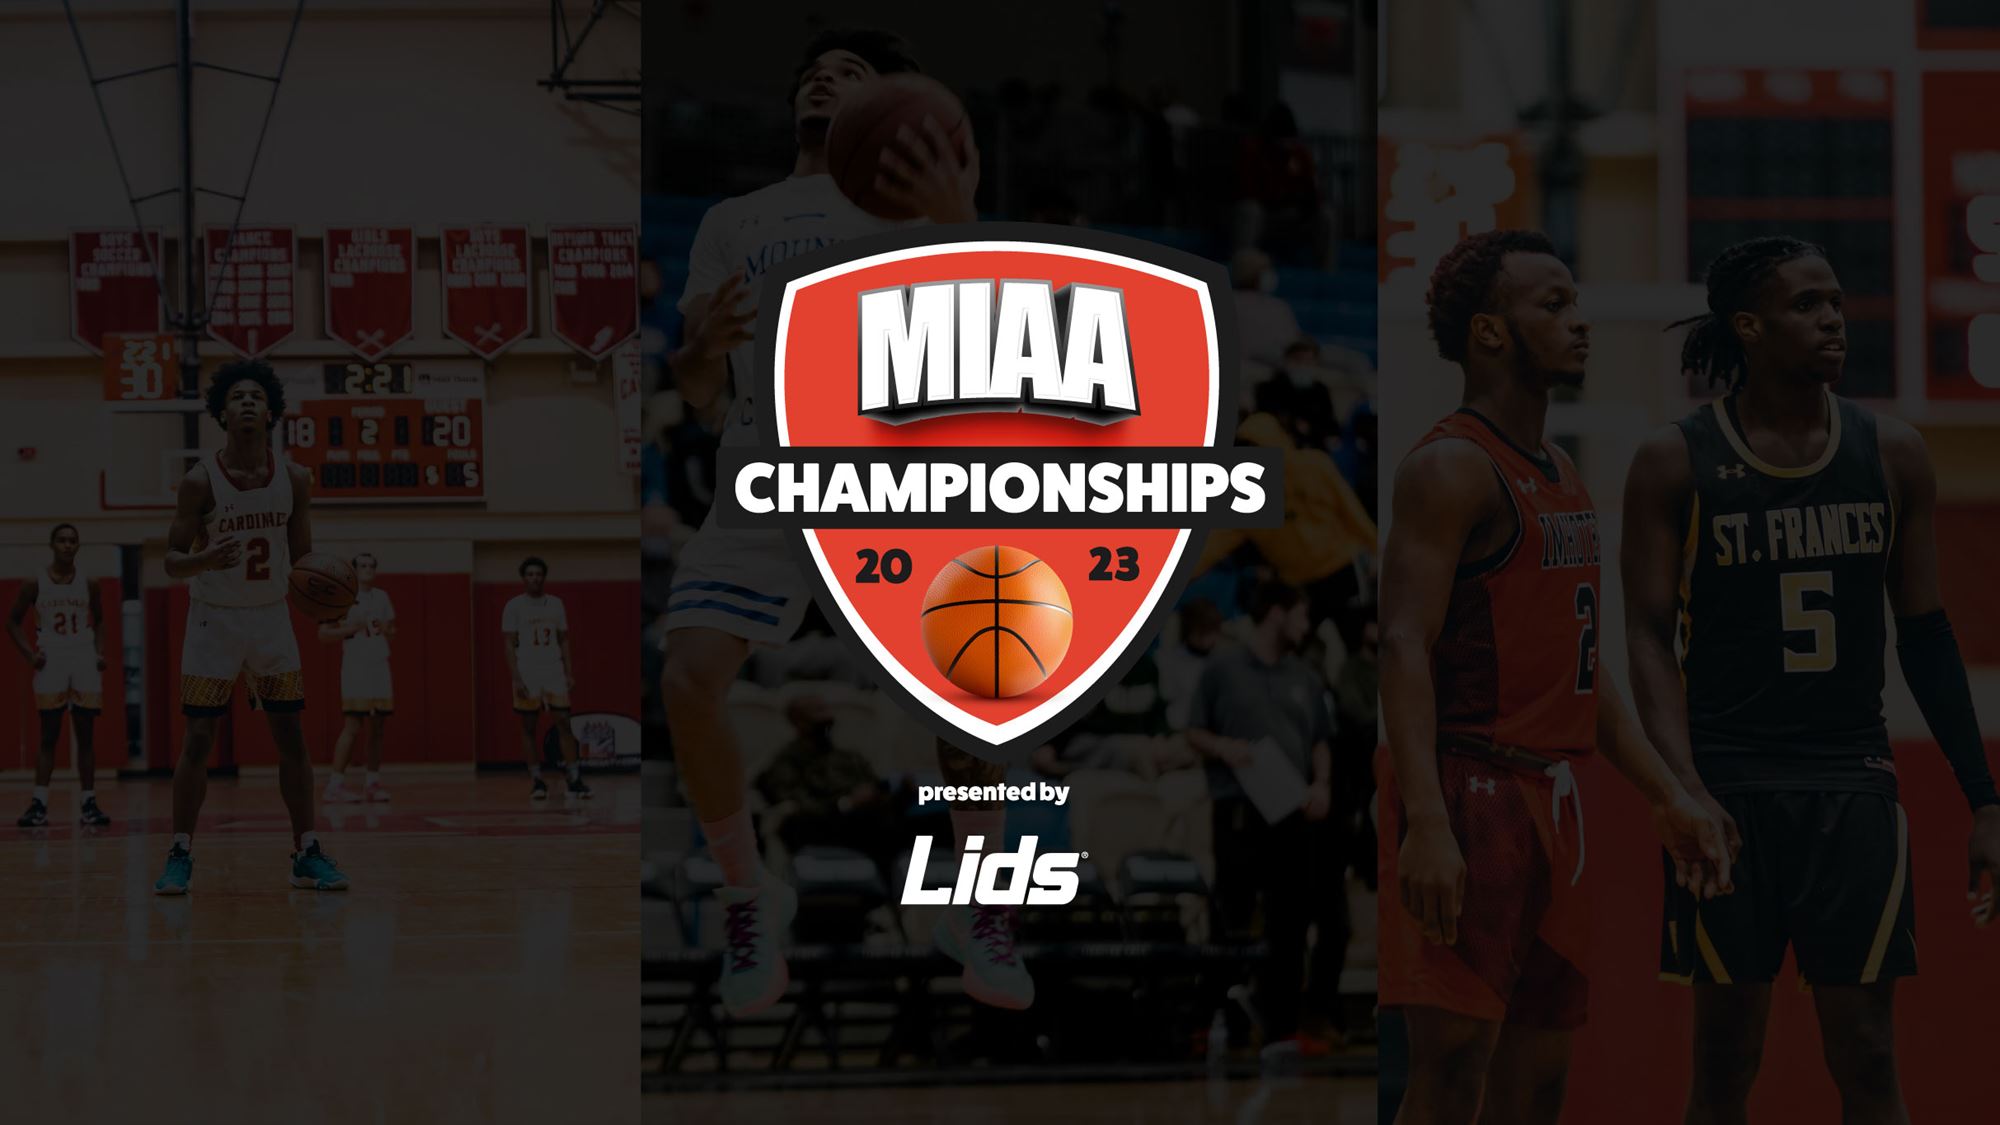 MIAA Championships